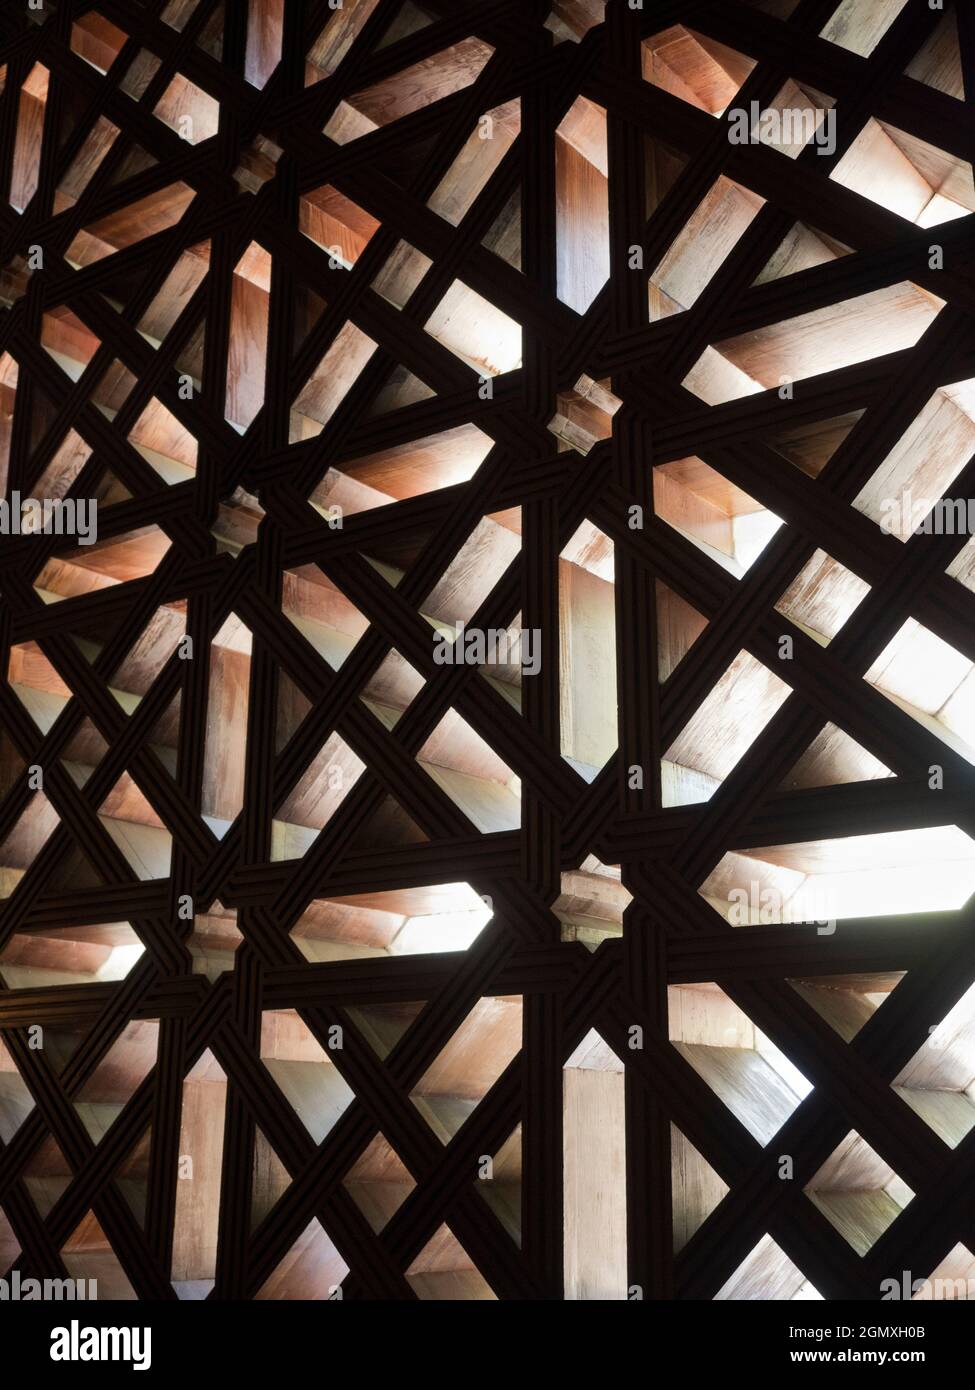 Cordoba, Spagna - 16 maggio 2015; nessuna gente in vista. La moschea-cattedrale di Mezquita a Cordoba, in Spagna, è un edificio davvero affascinante con un evento Foto Stock